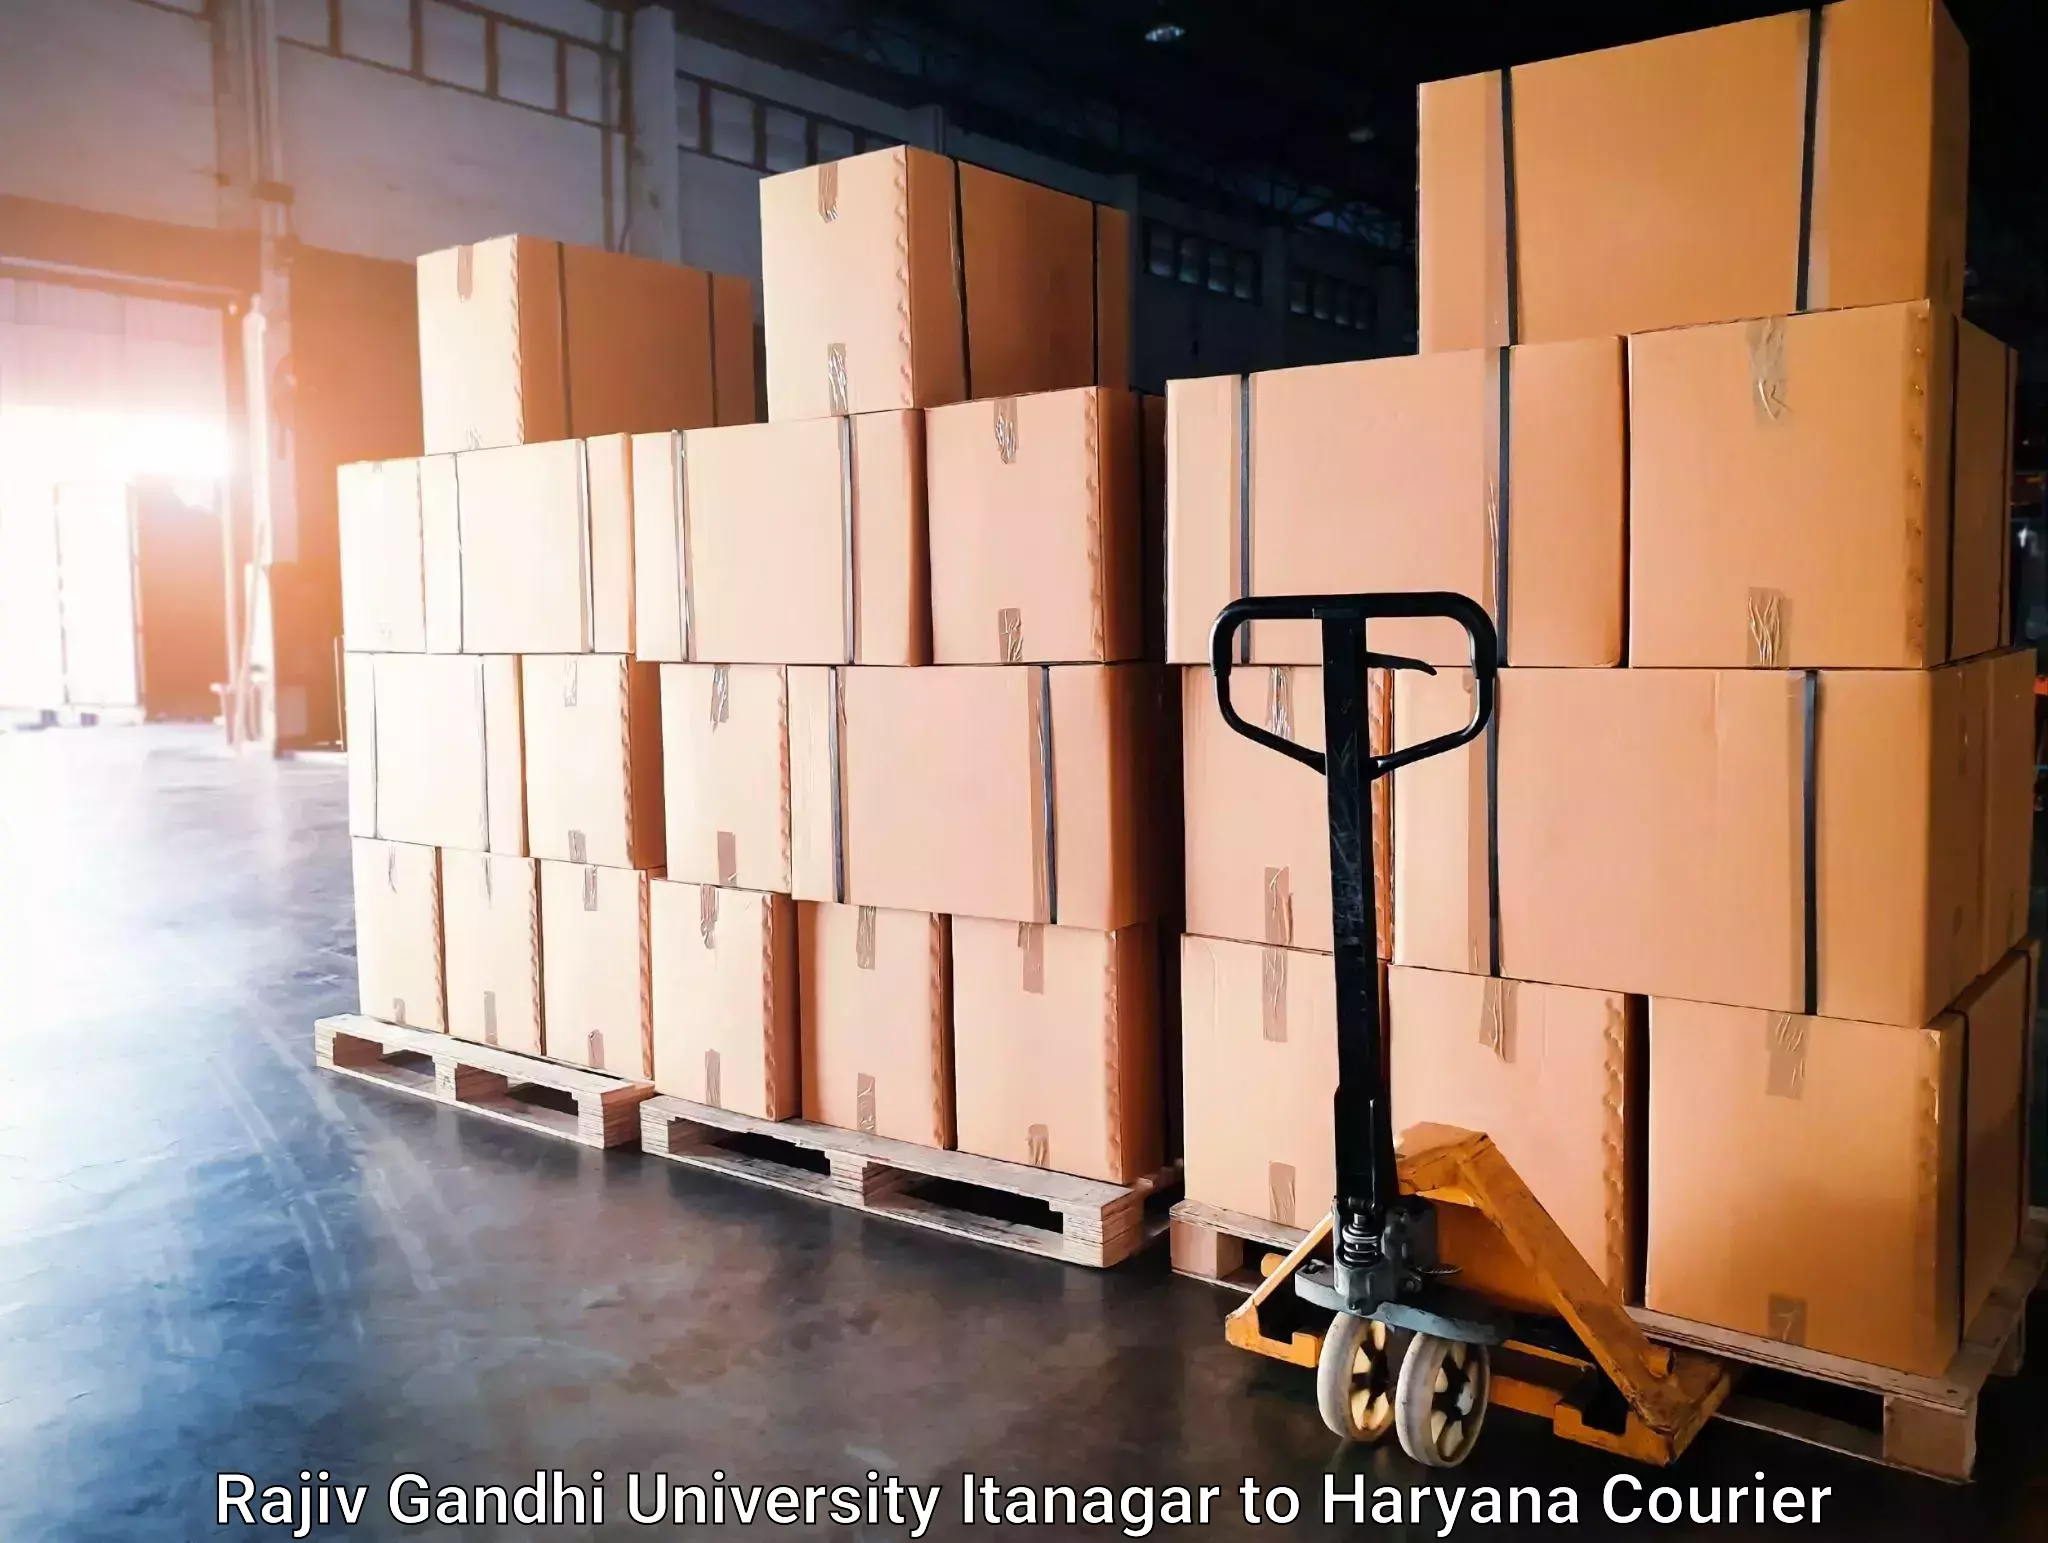 Package tracking Rajiv Gandhi University Itanagar to Haryana